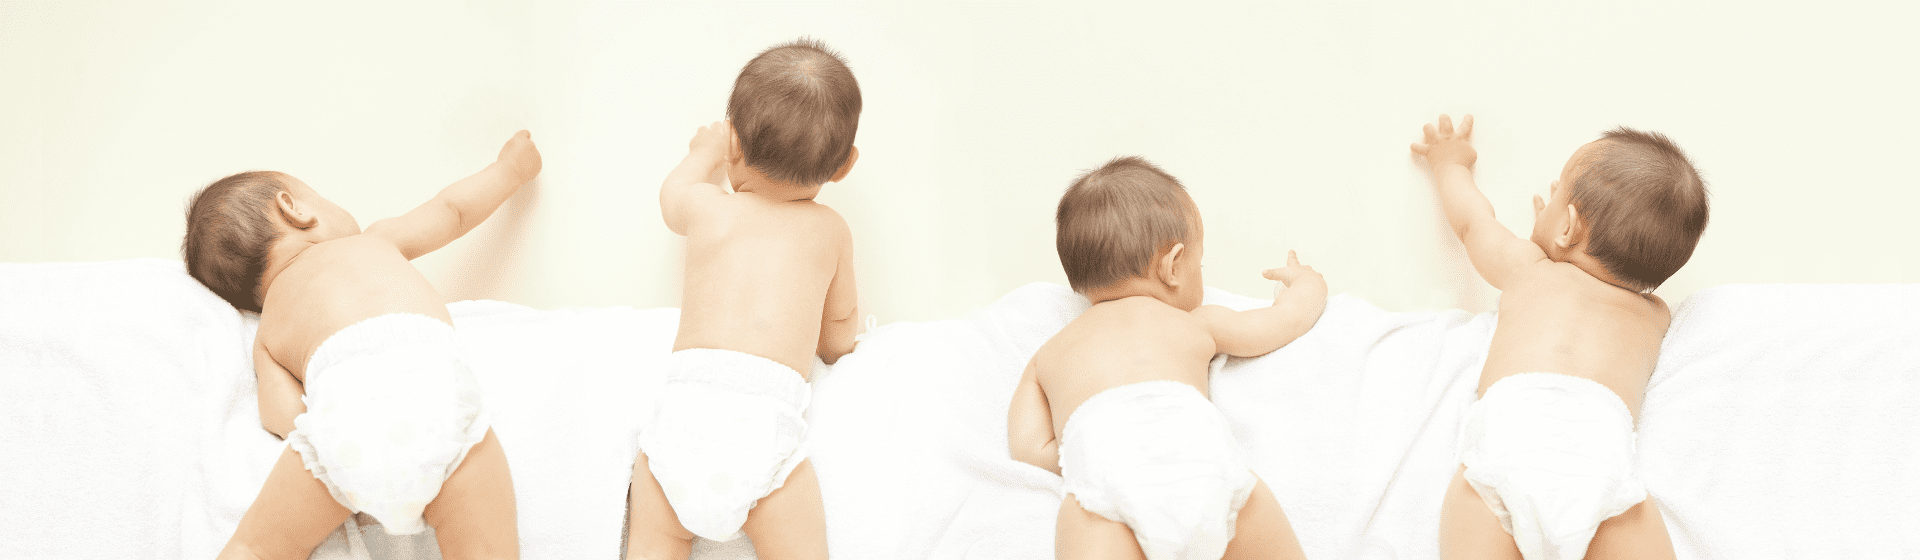 Fralda descartável barata: 8 opções boas e baratas para bebês